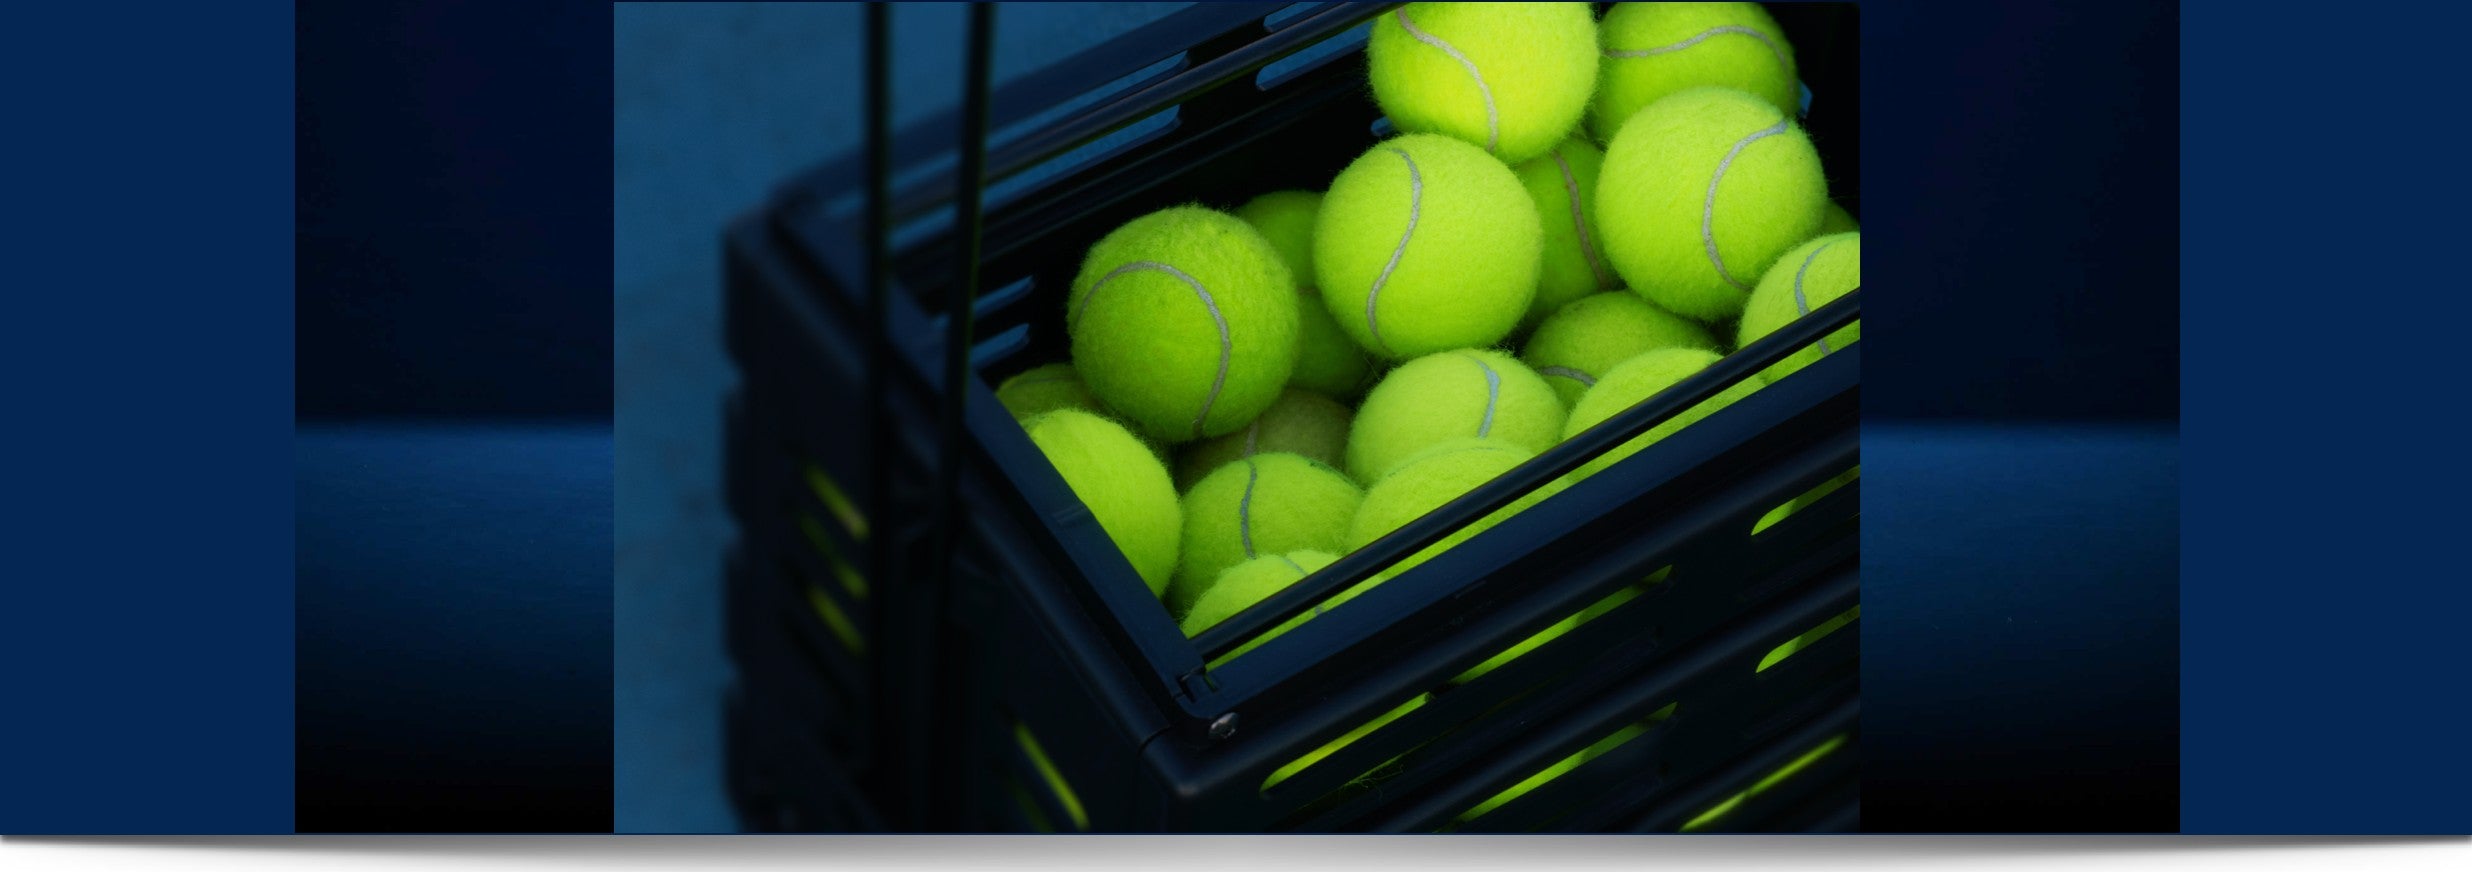 Tennis Balls Racquet Point